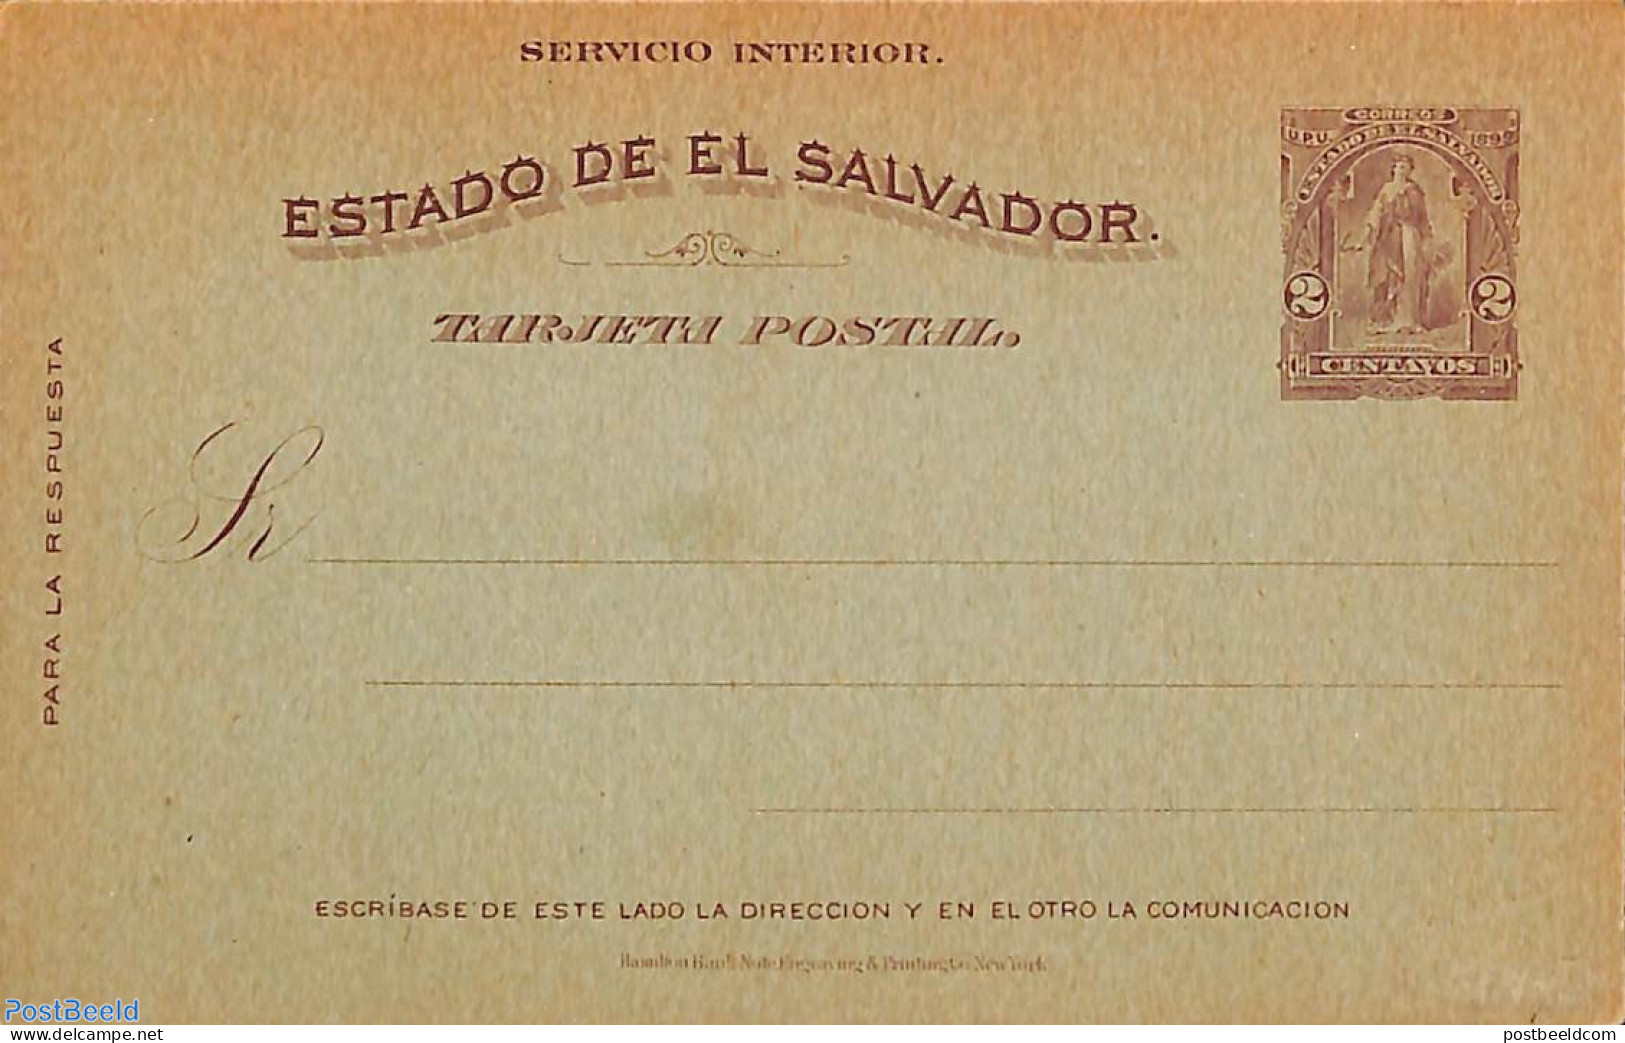 El Salvador 1899 Postcard 2c, Unused Postal Stationary - El Salvador